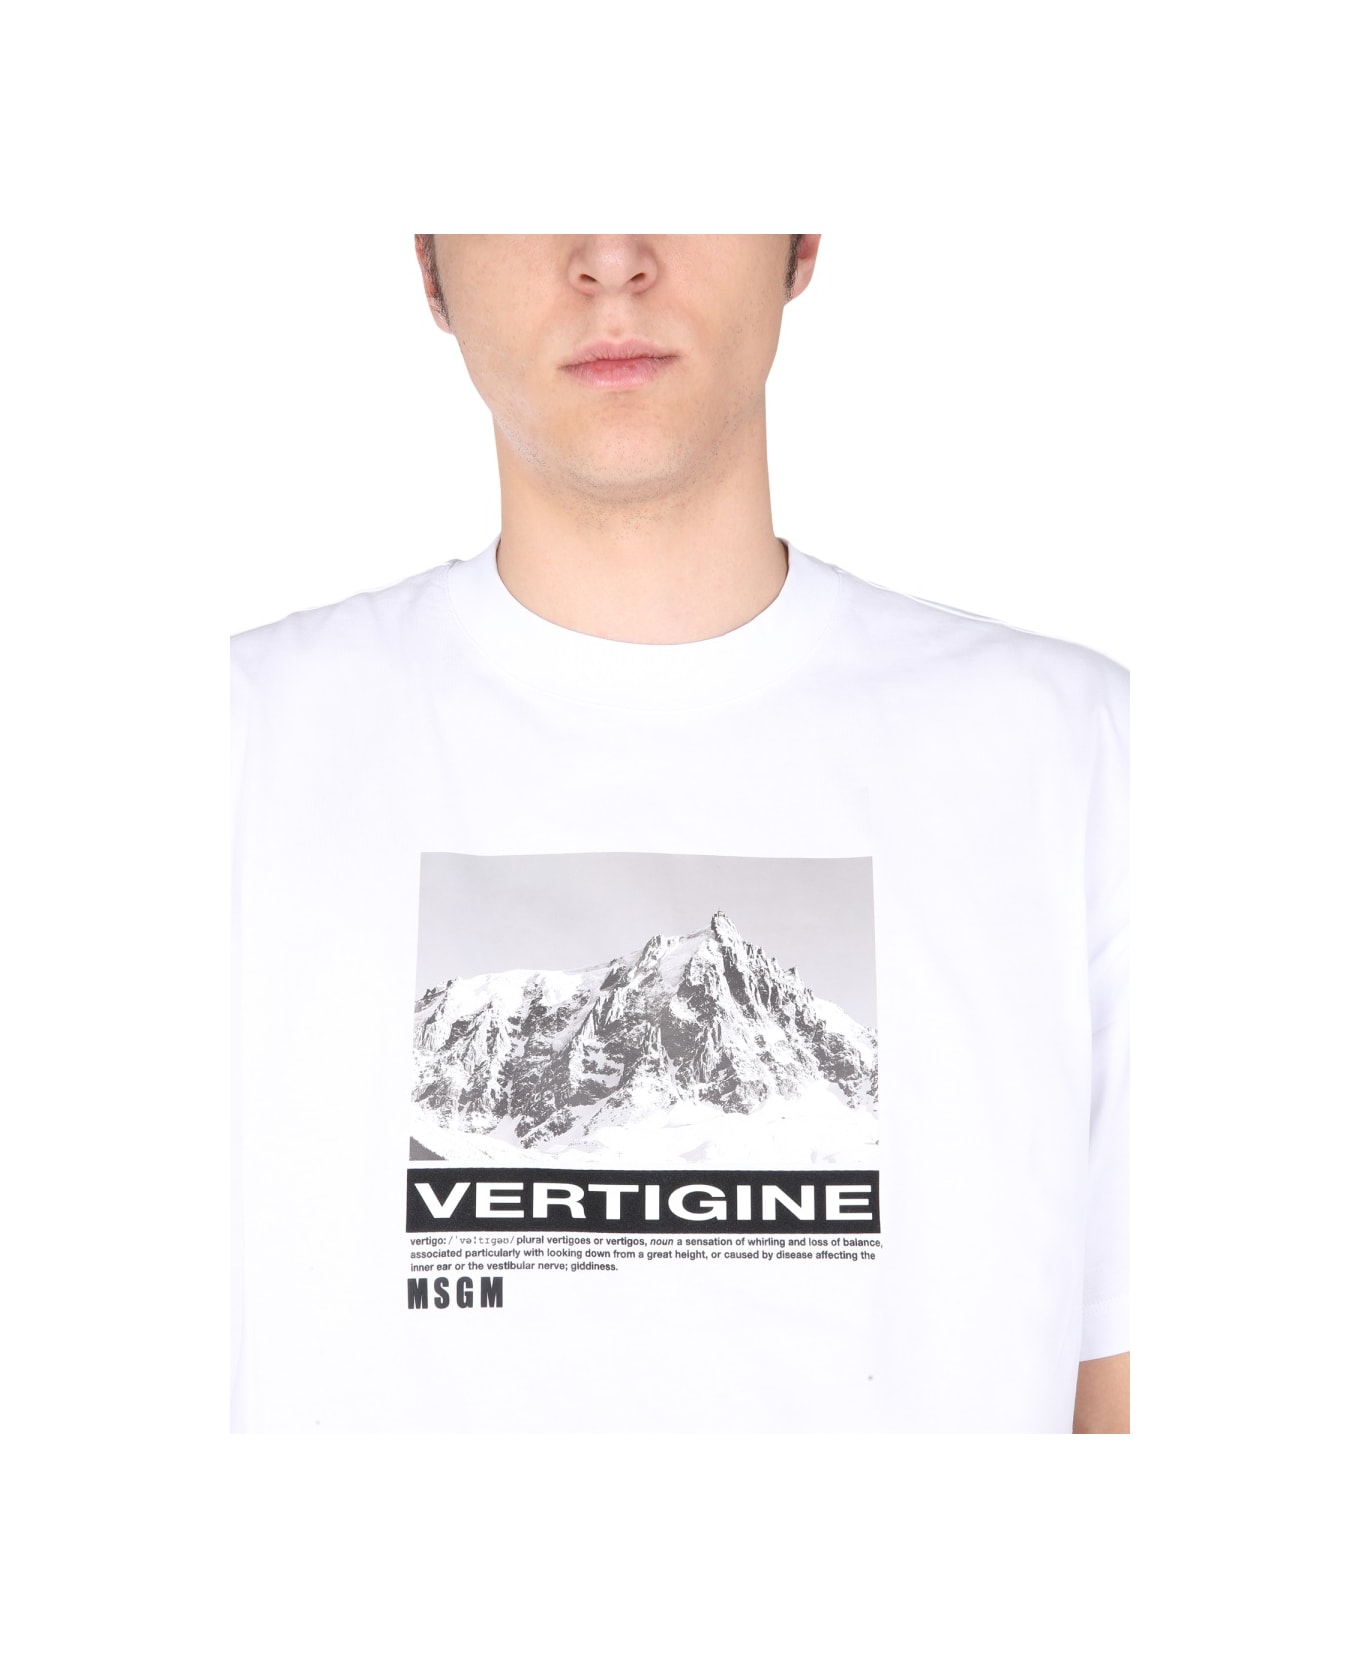 MSGM T-shirt With Vertigo Print - WHITE